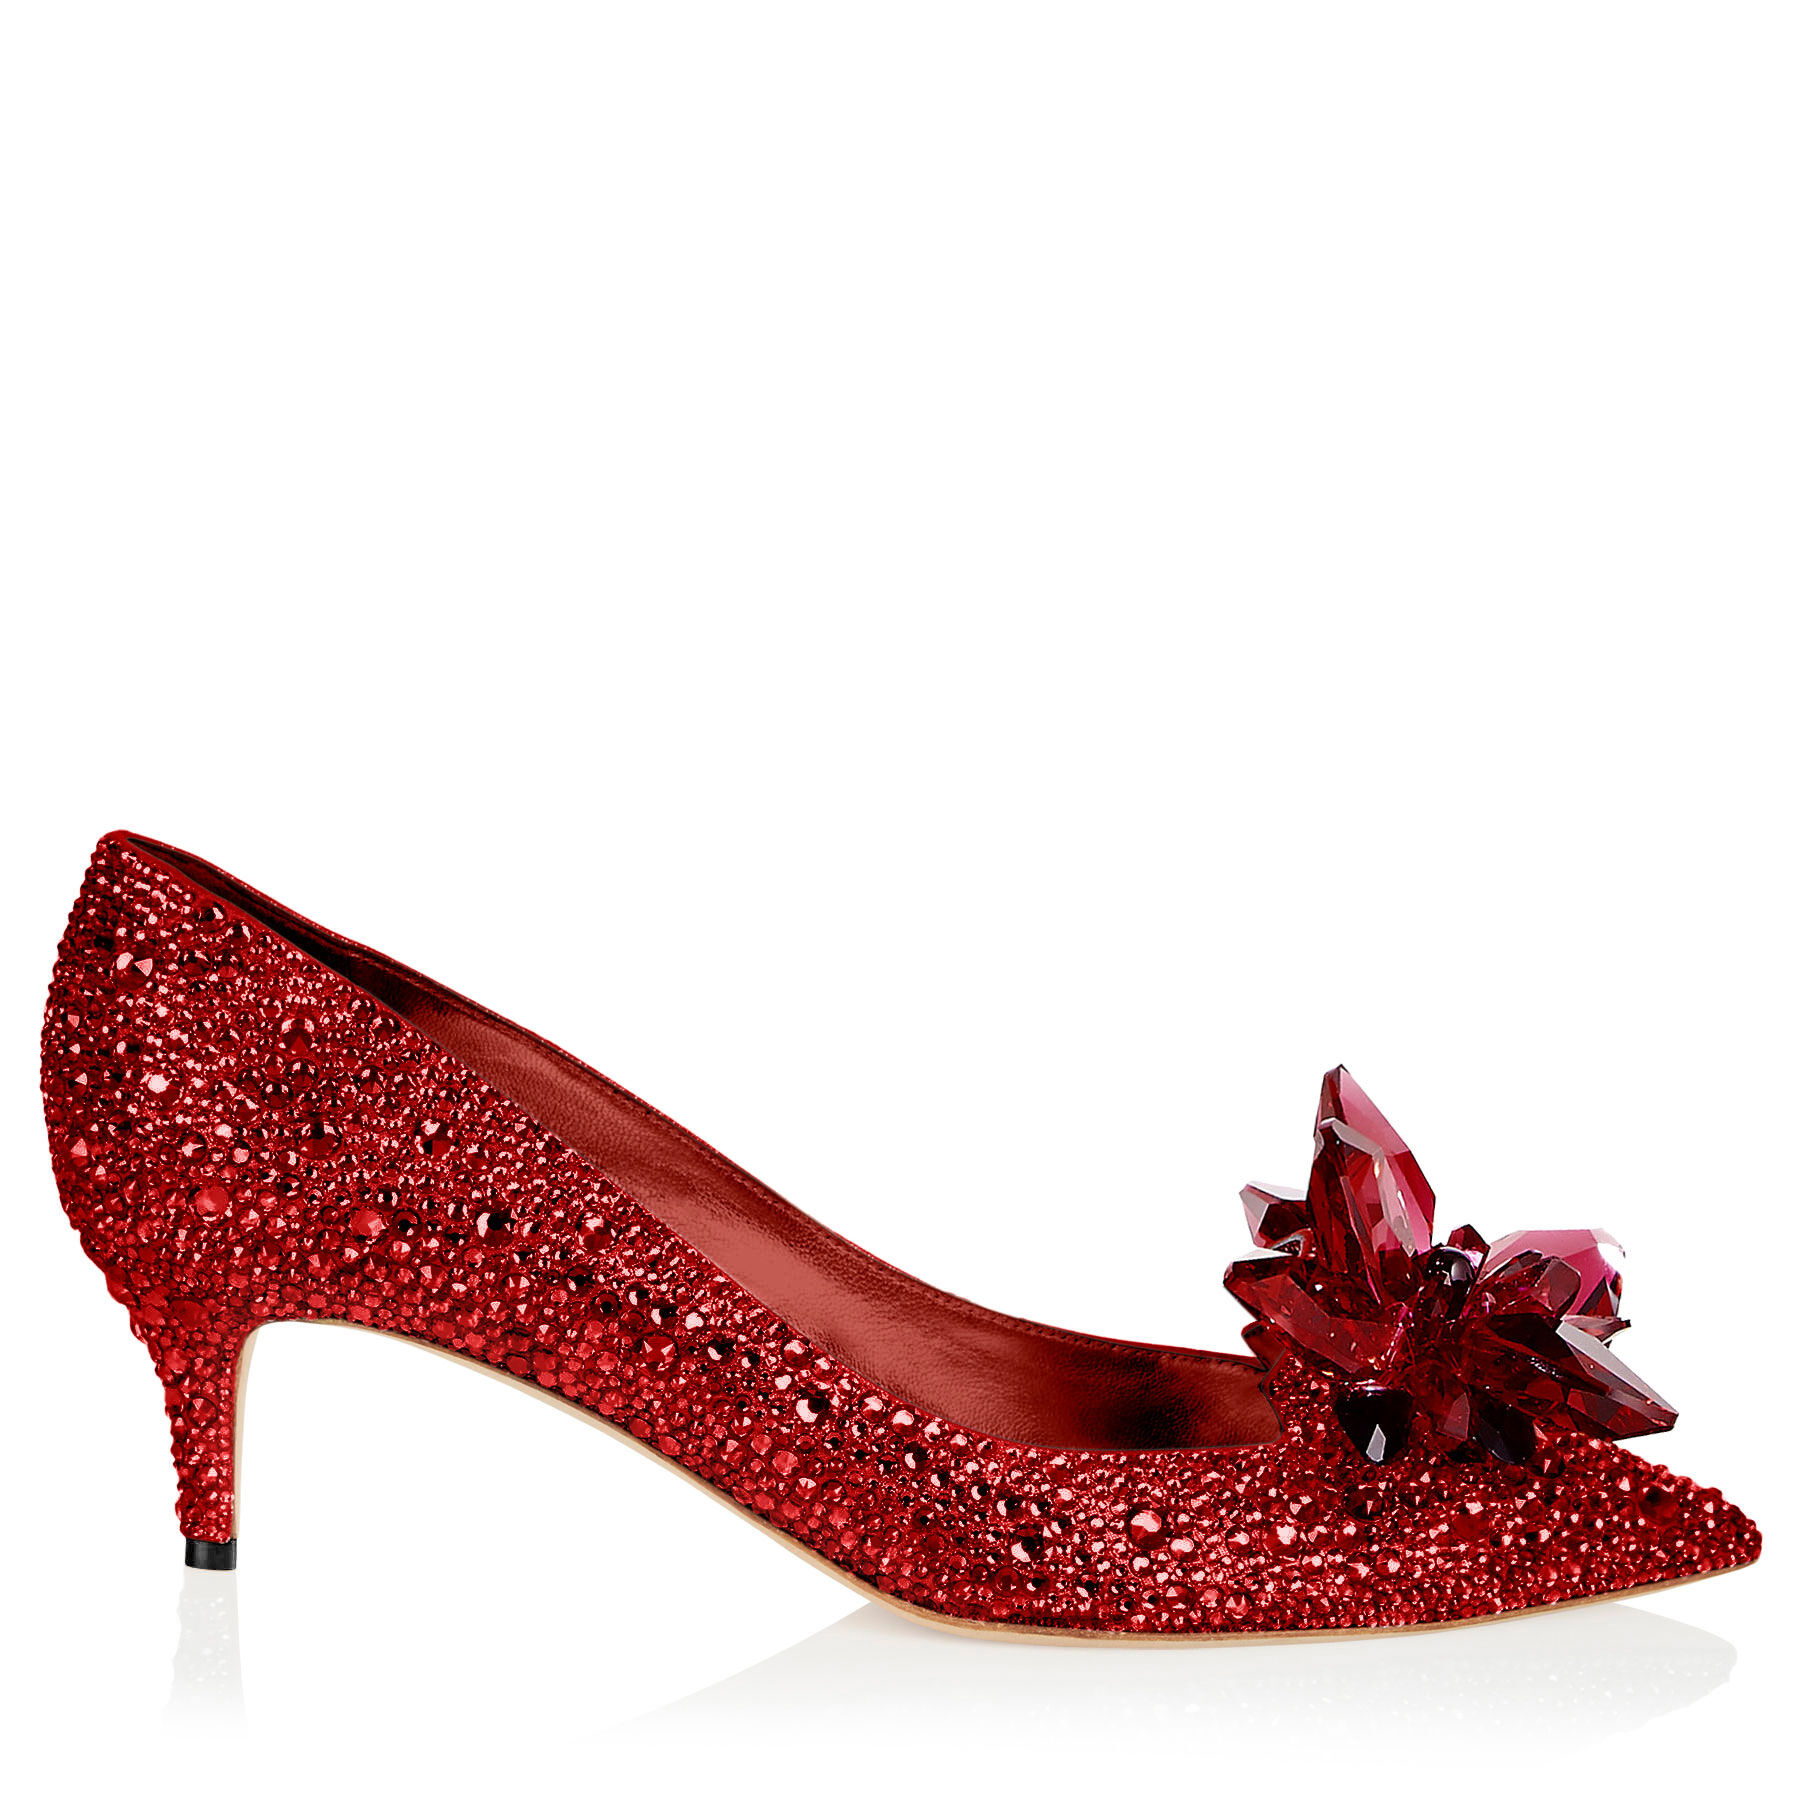 Buy > jimmy choo heels red > in stock